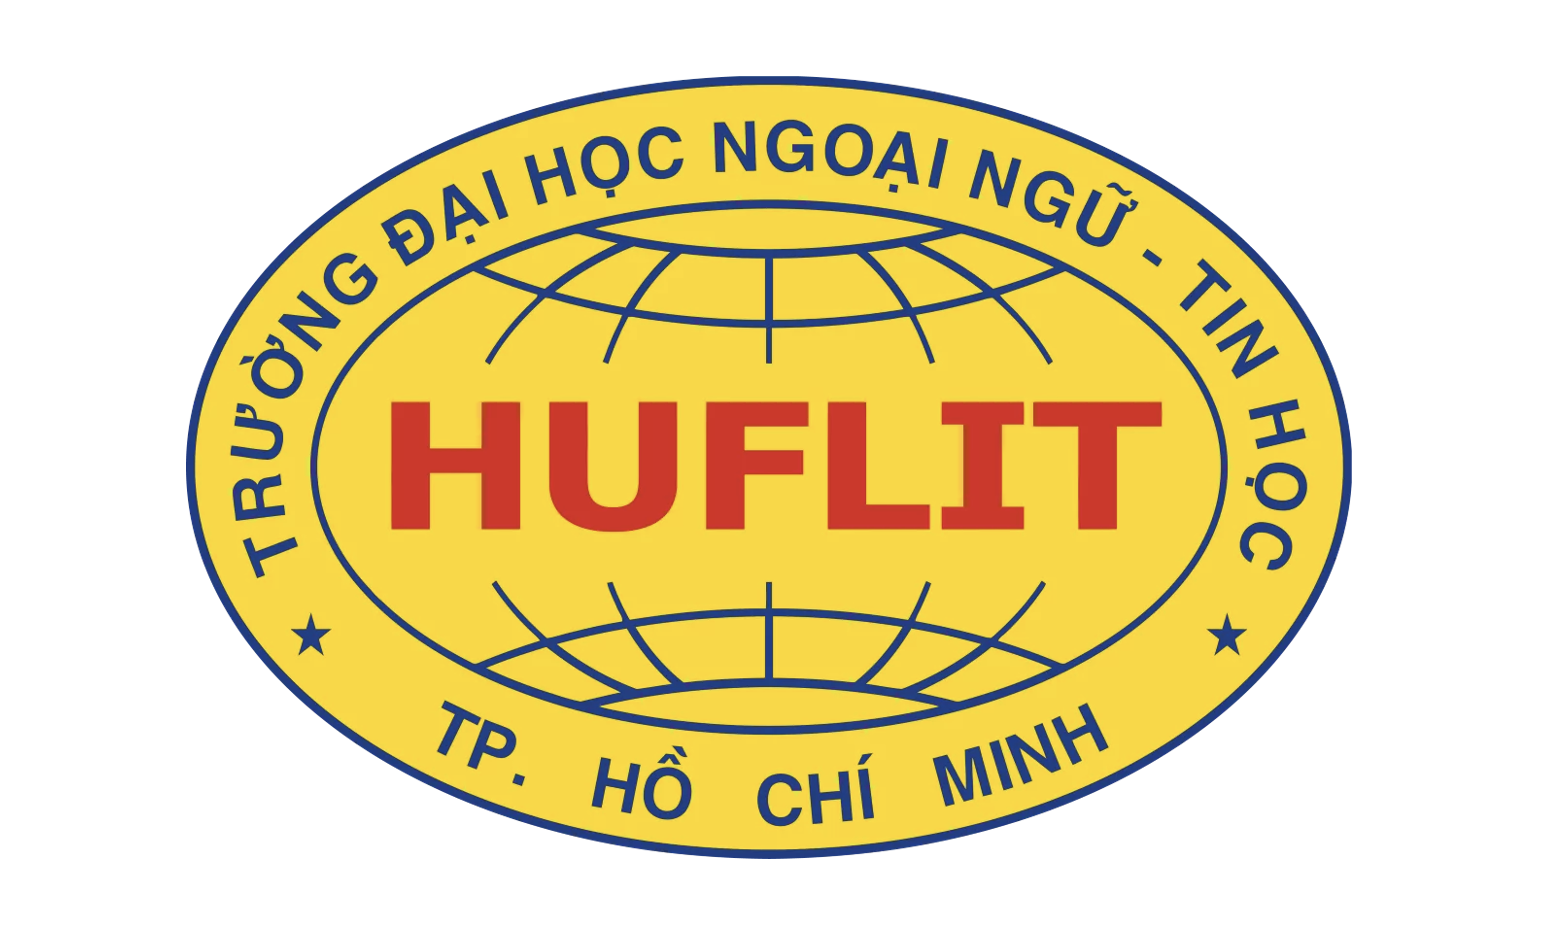 Trường ĐH Ngoại ngữ - Tin học TP HCM (HUFLIT)